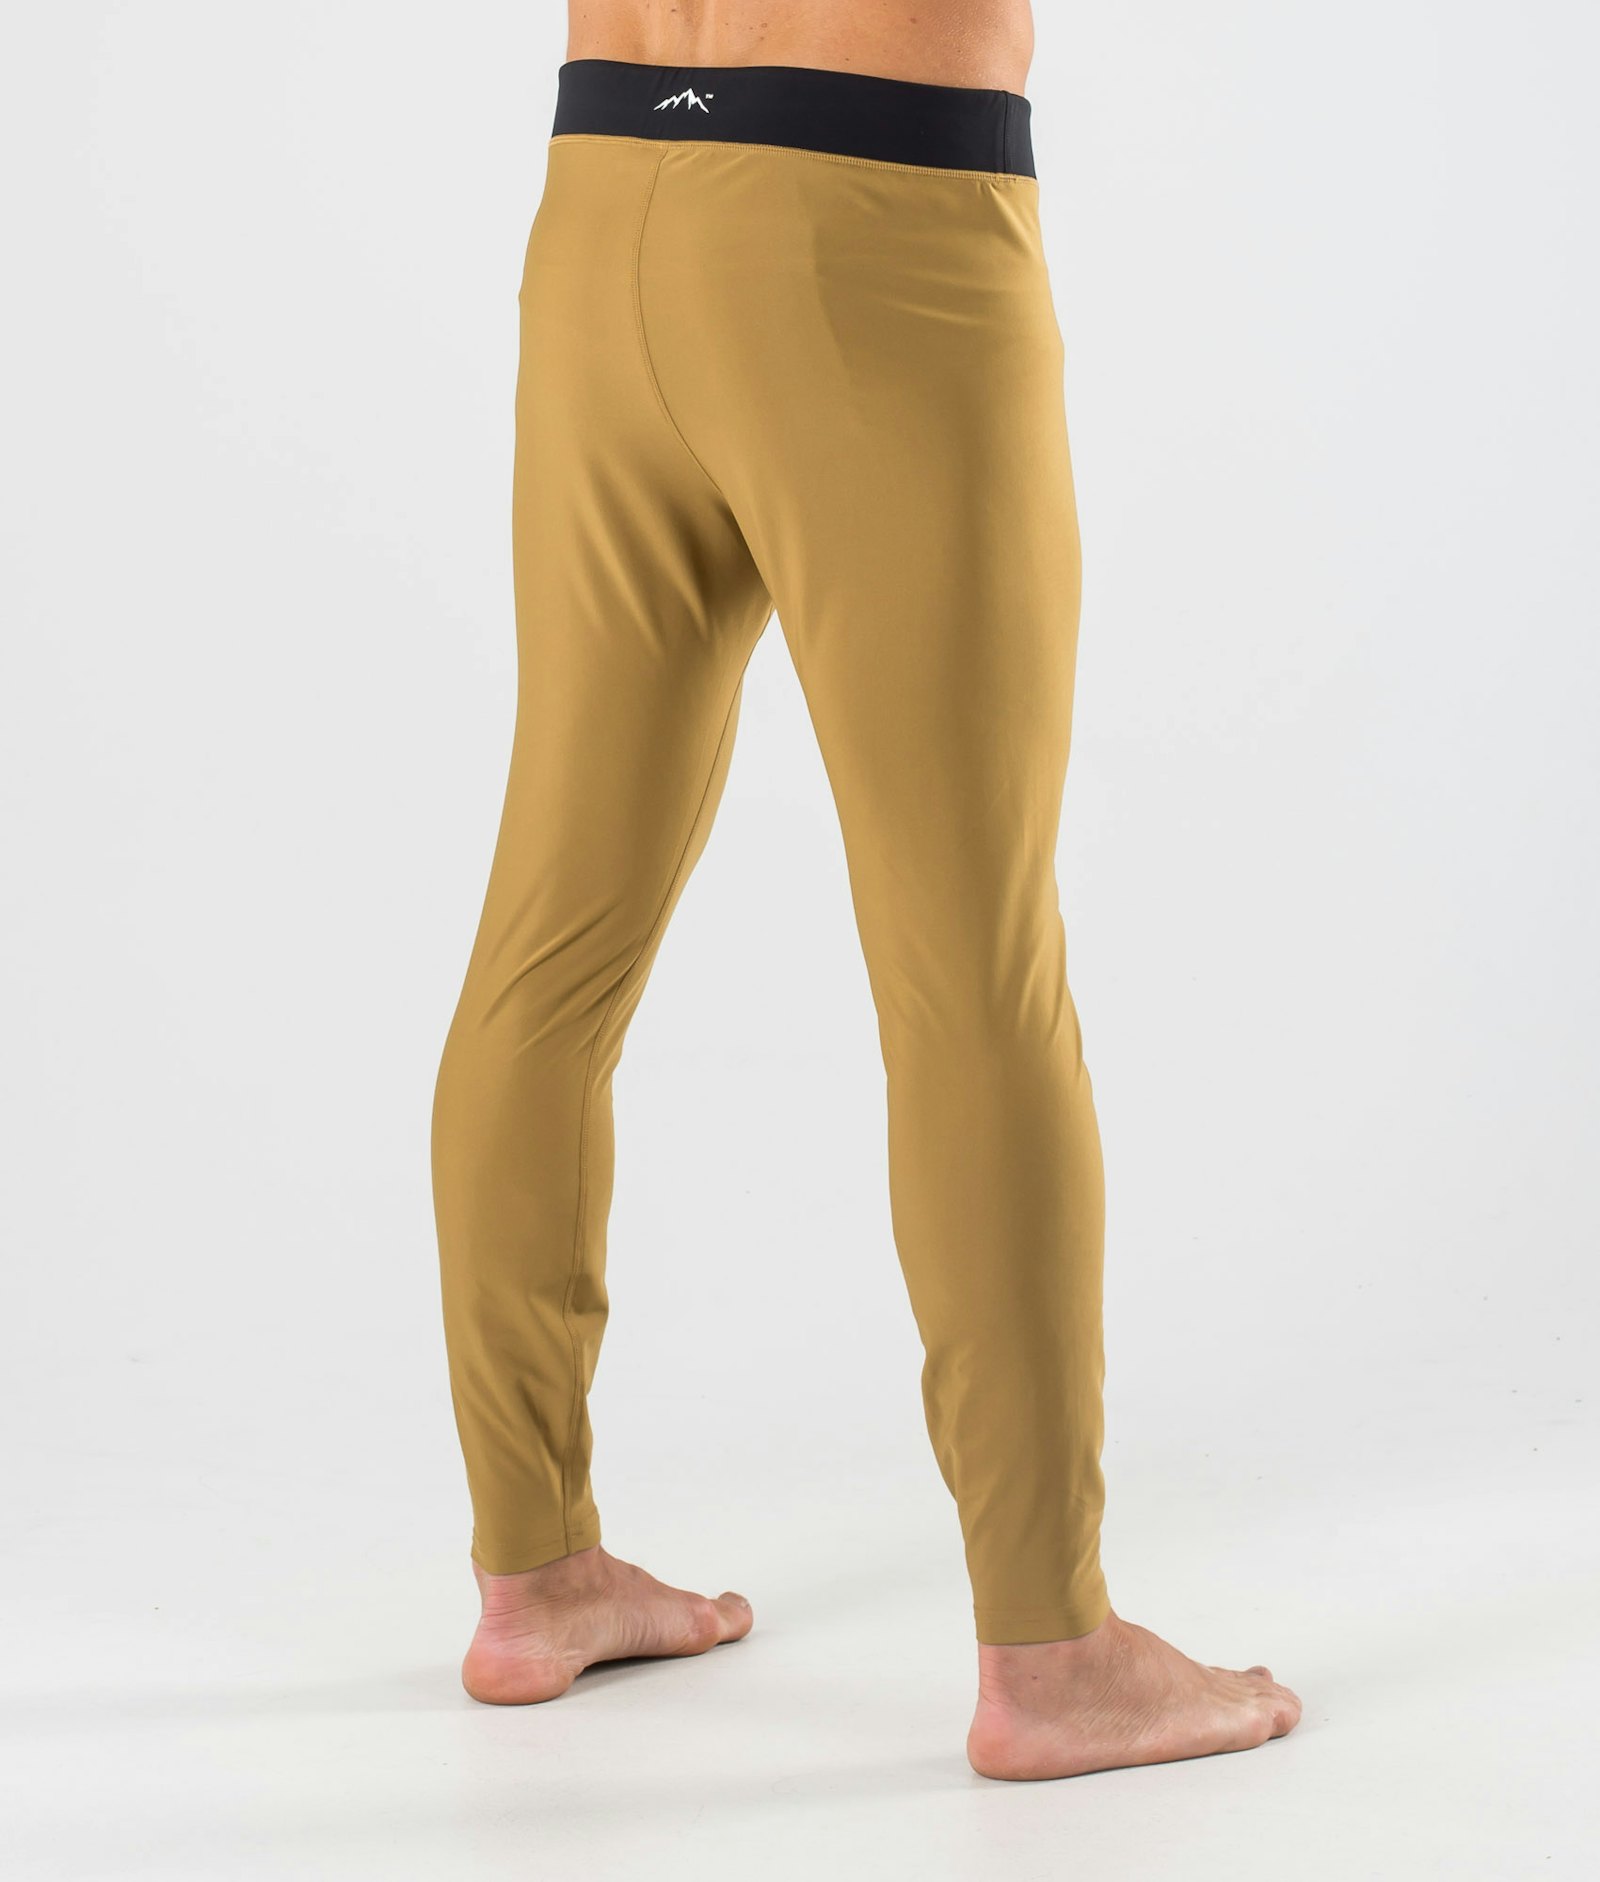 Snuggle Pantalon thermique Homme 2X-Up Gold